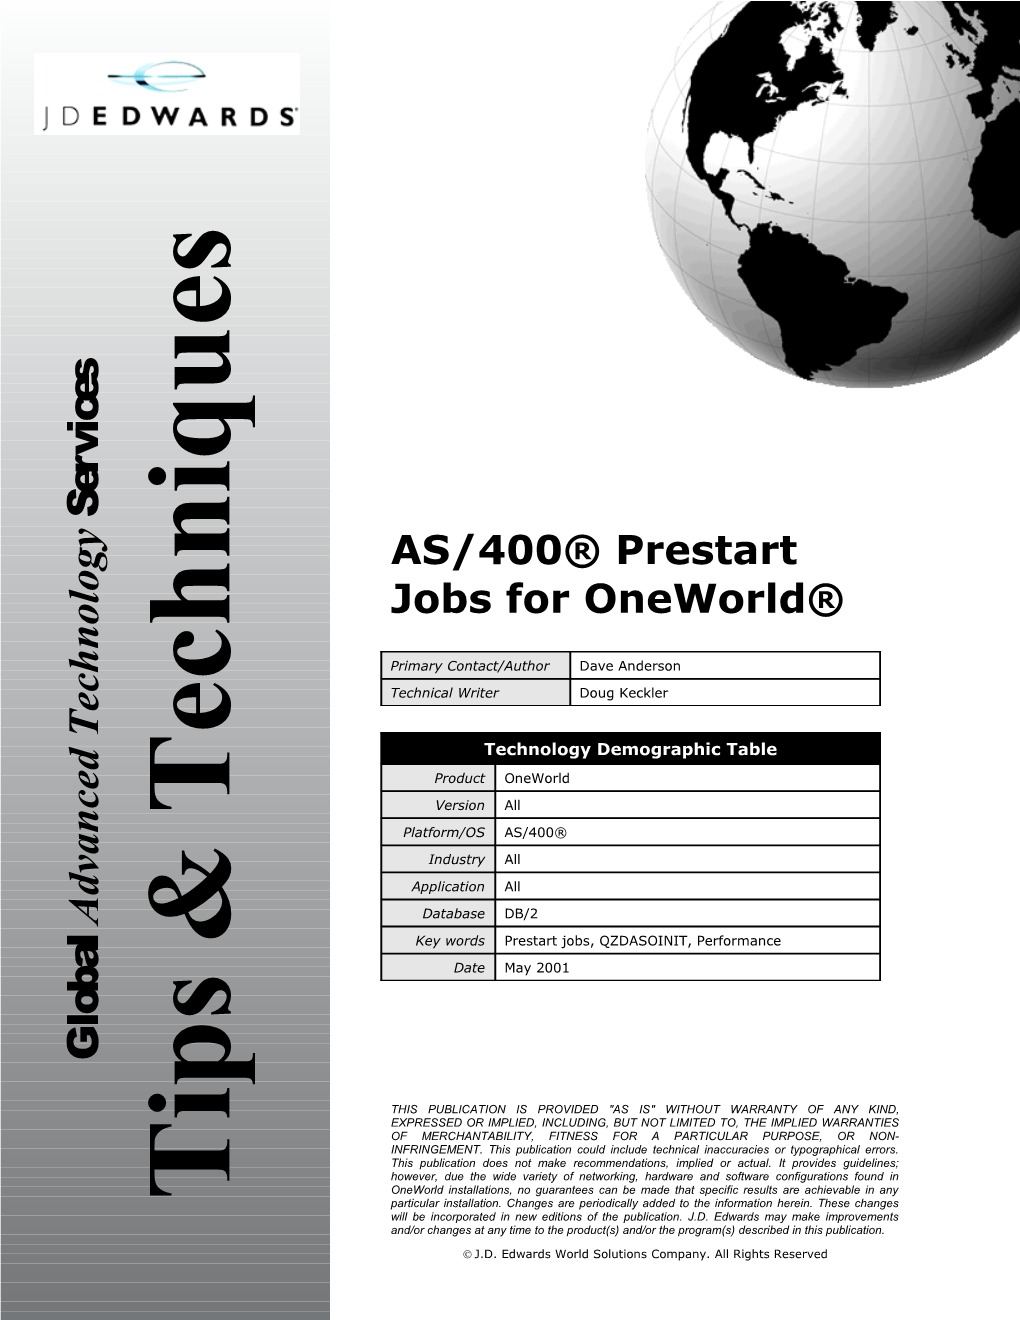 AS/400 Prestart Jobs for Oneworld